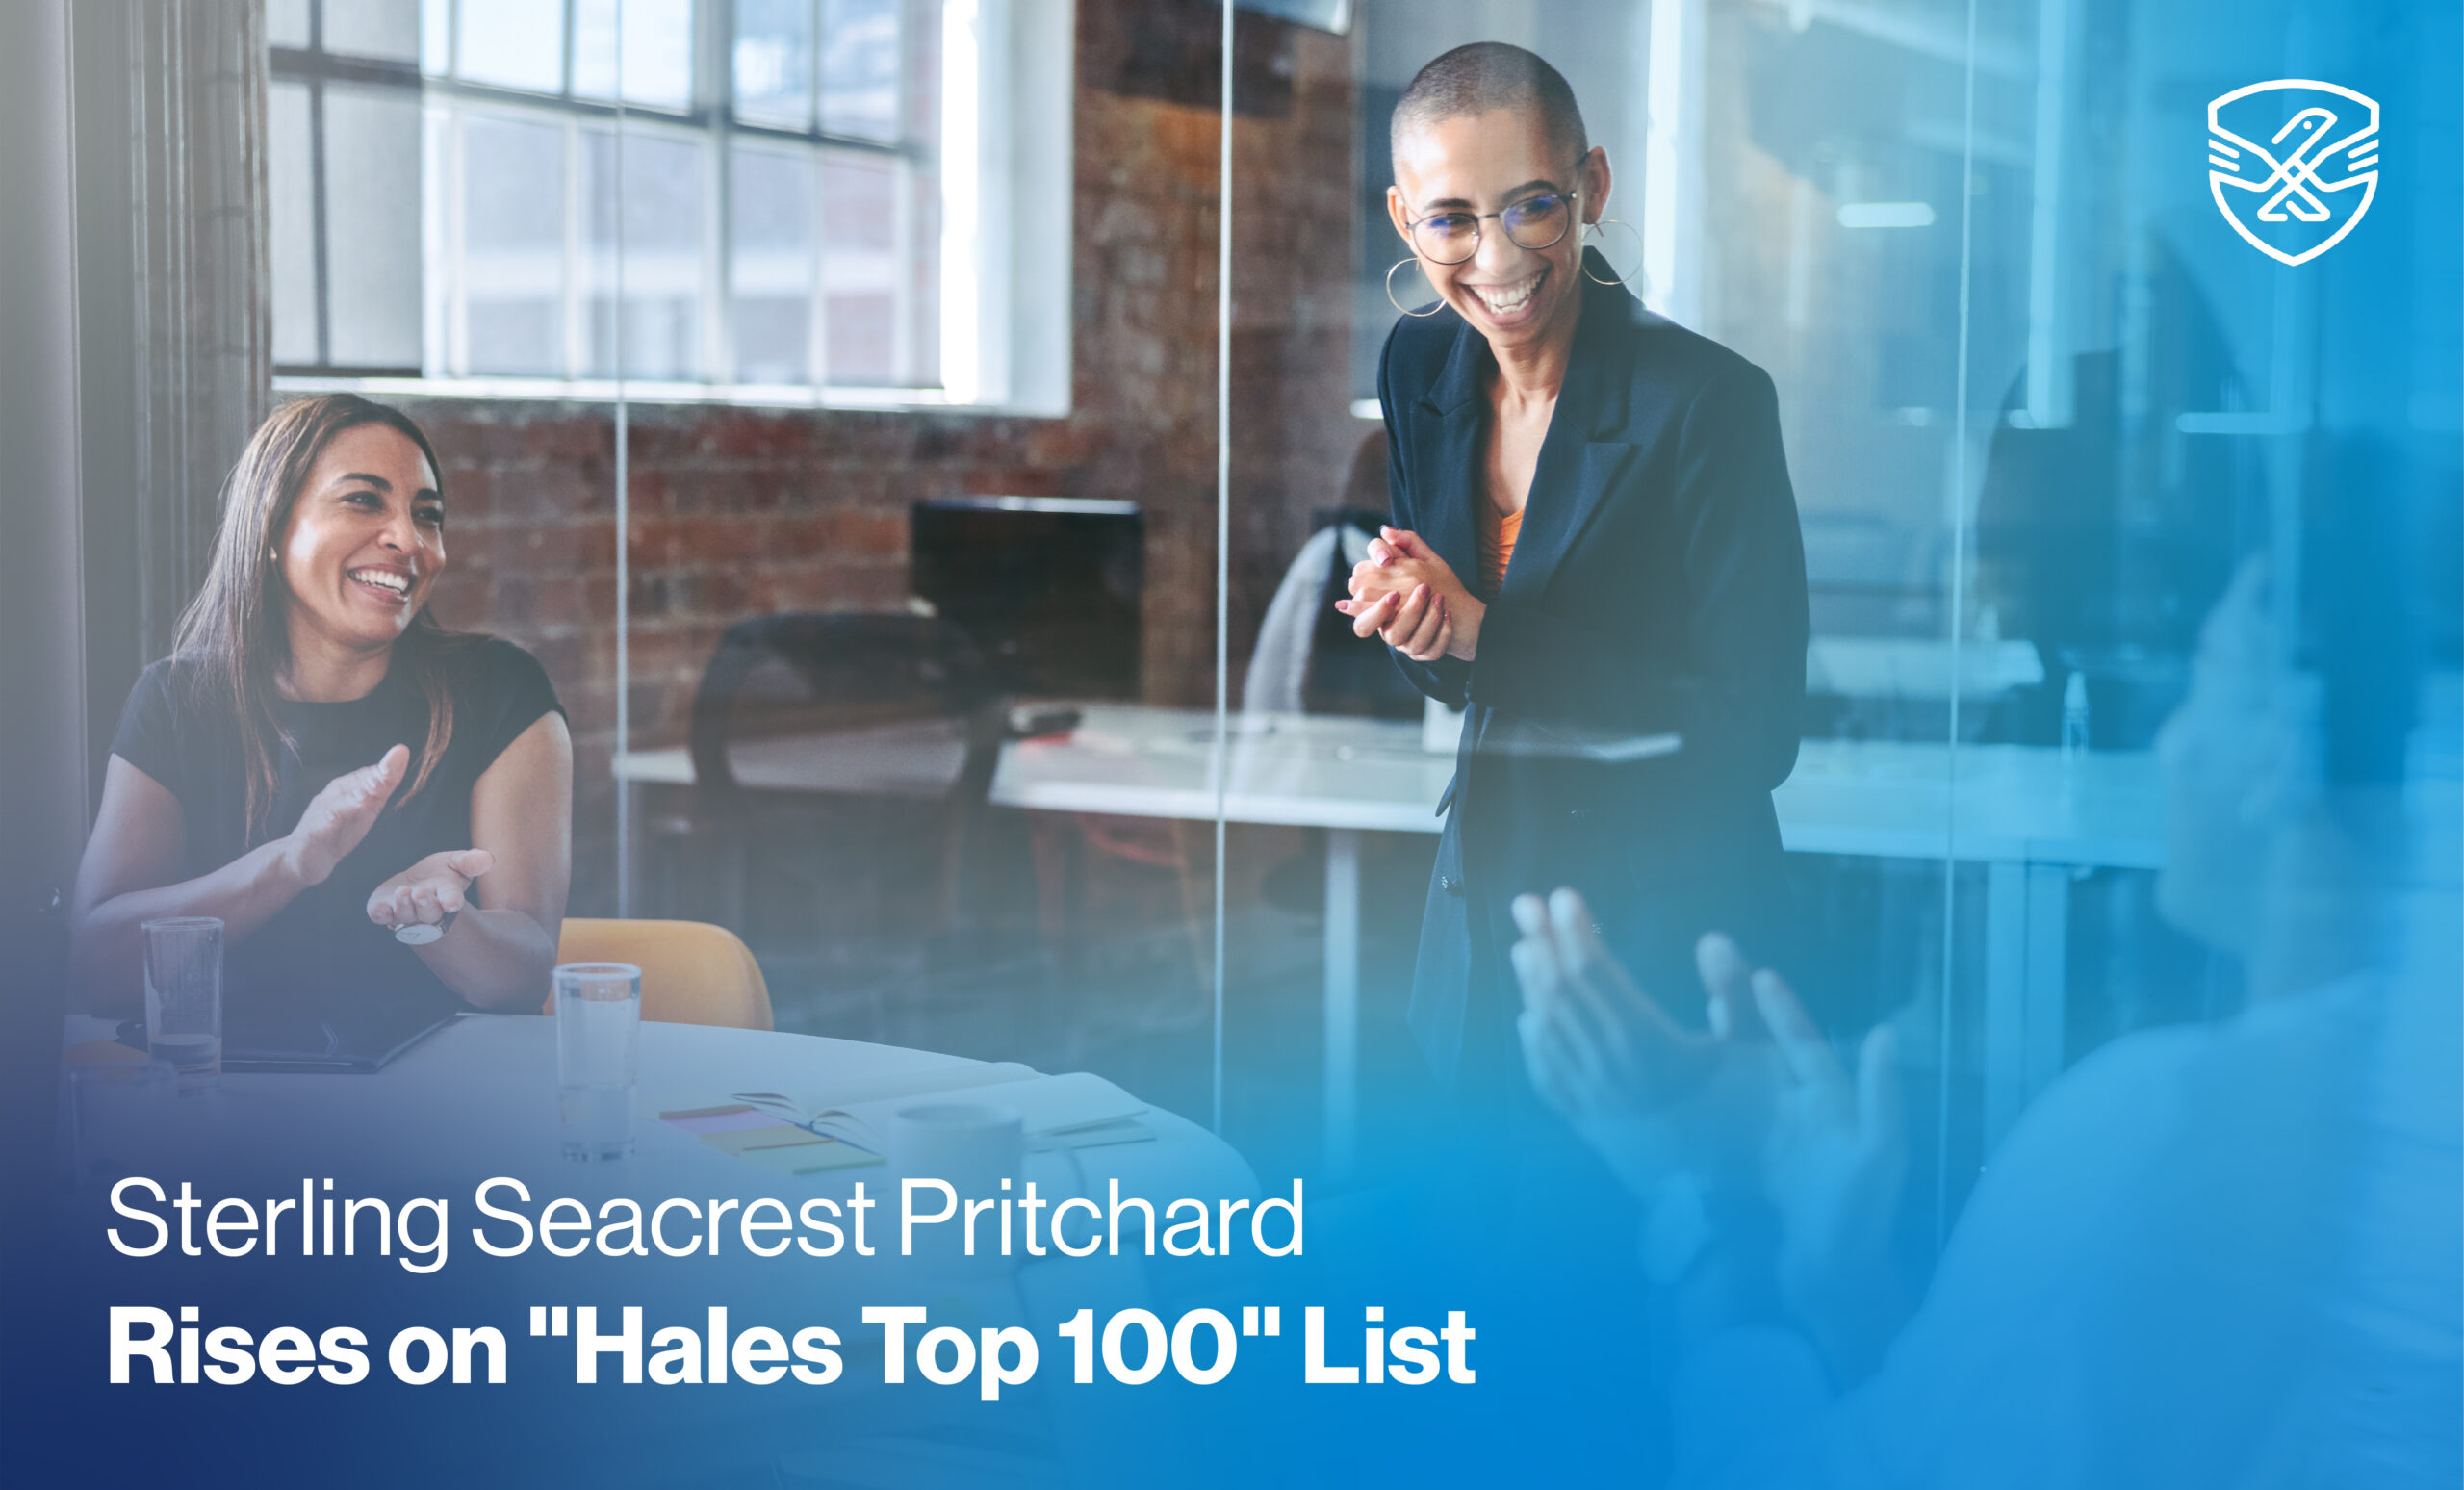 Sterling Seacrest Pritchard Rises on "Hales Top 100" List